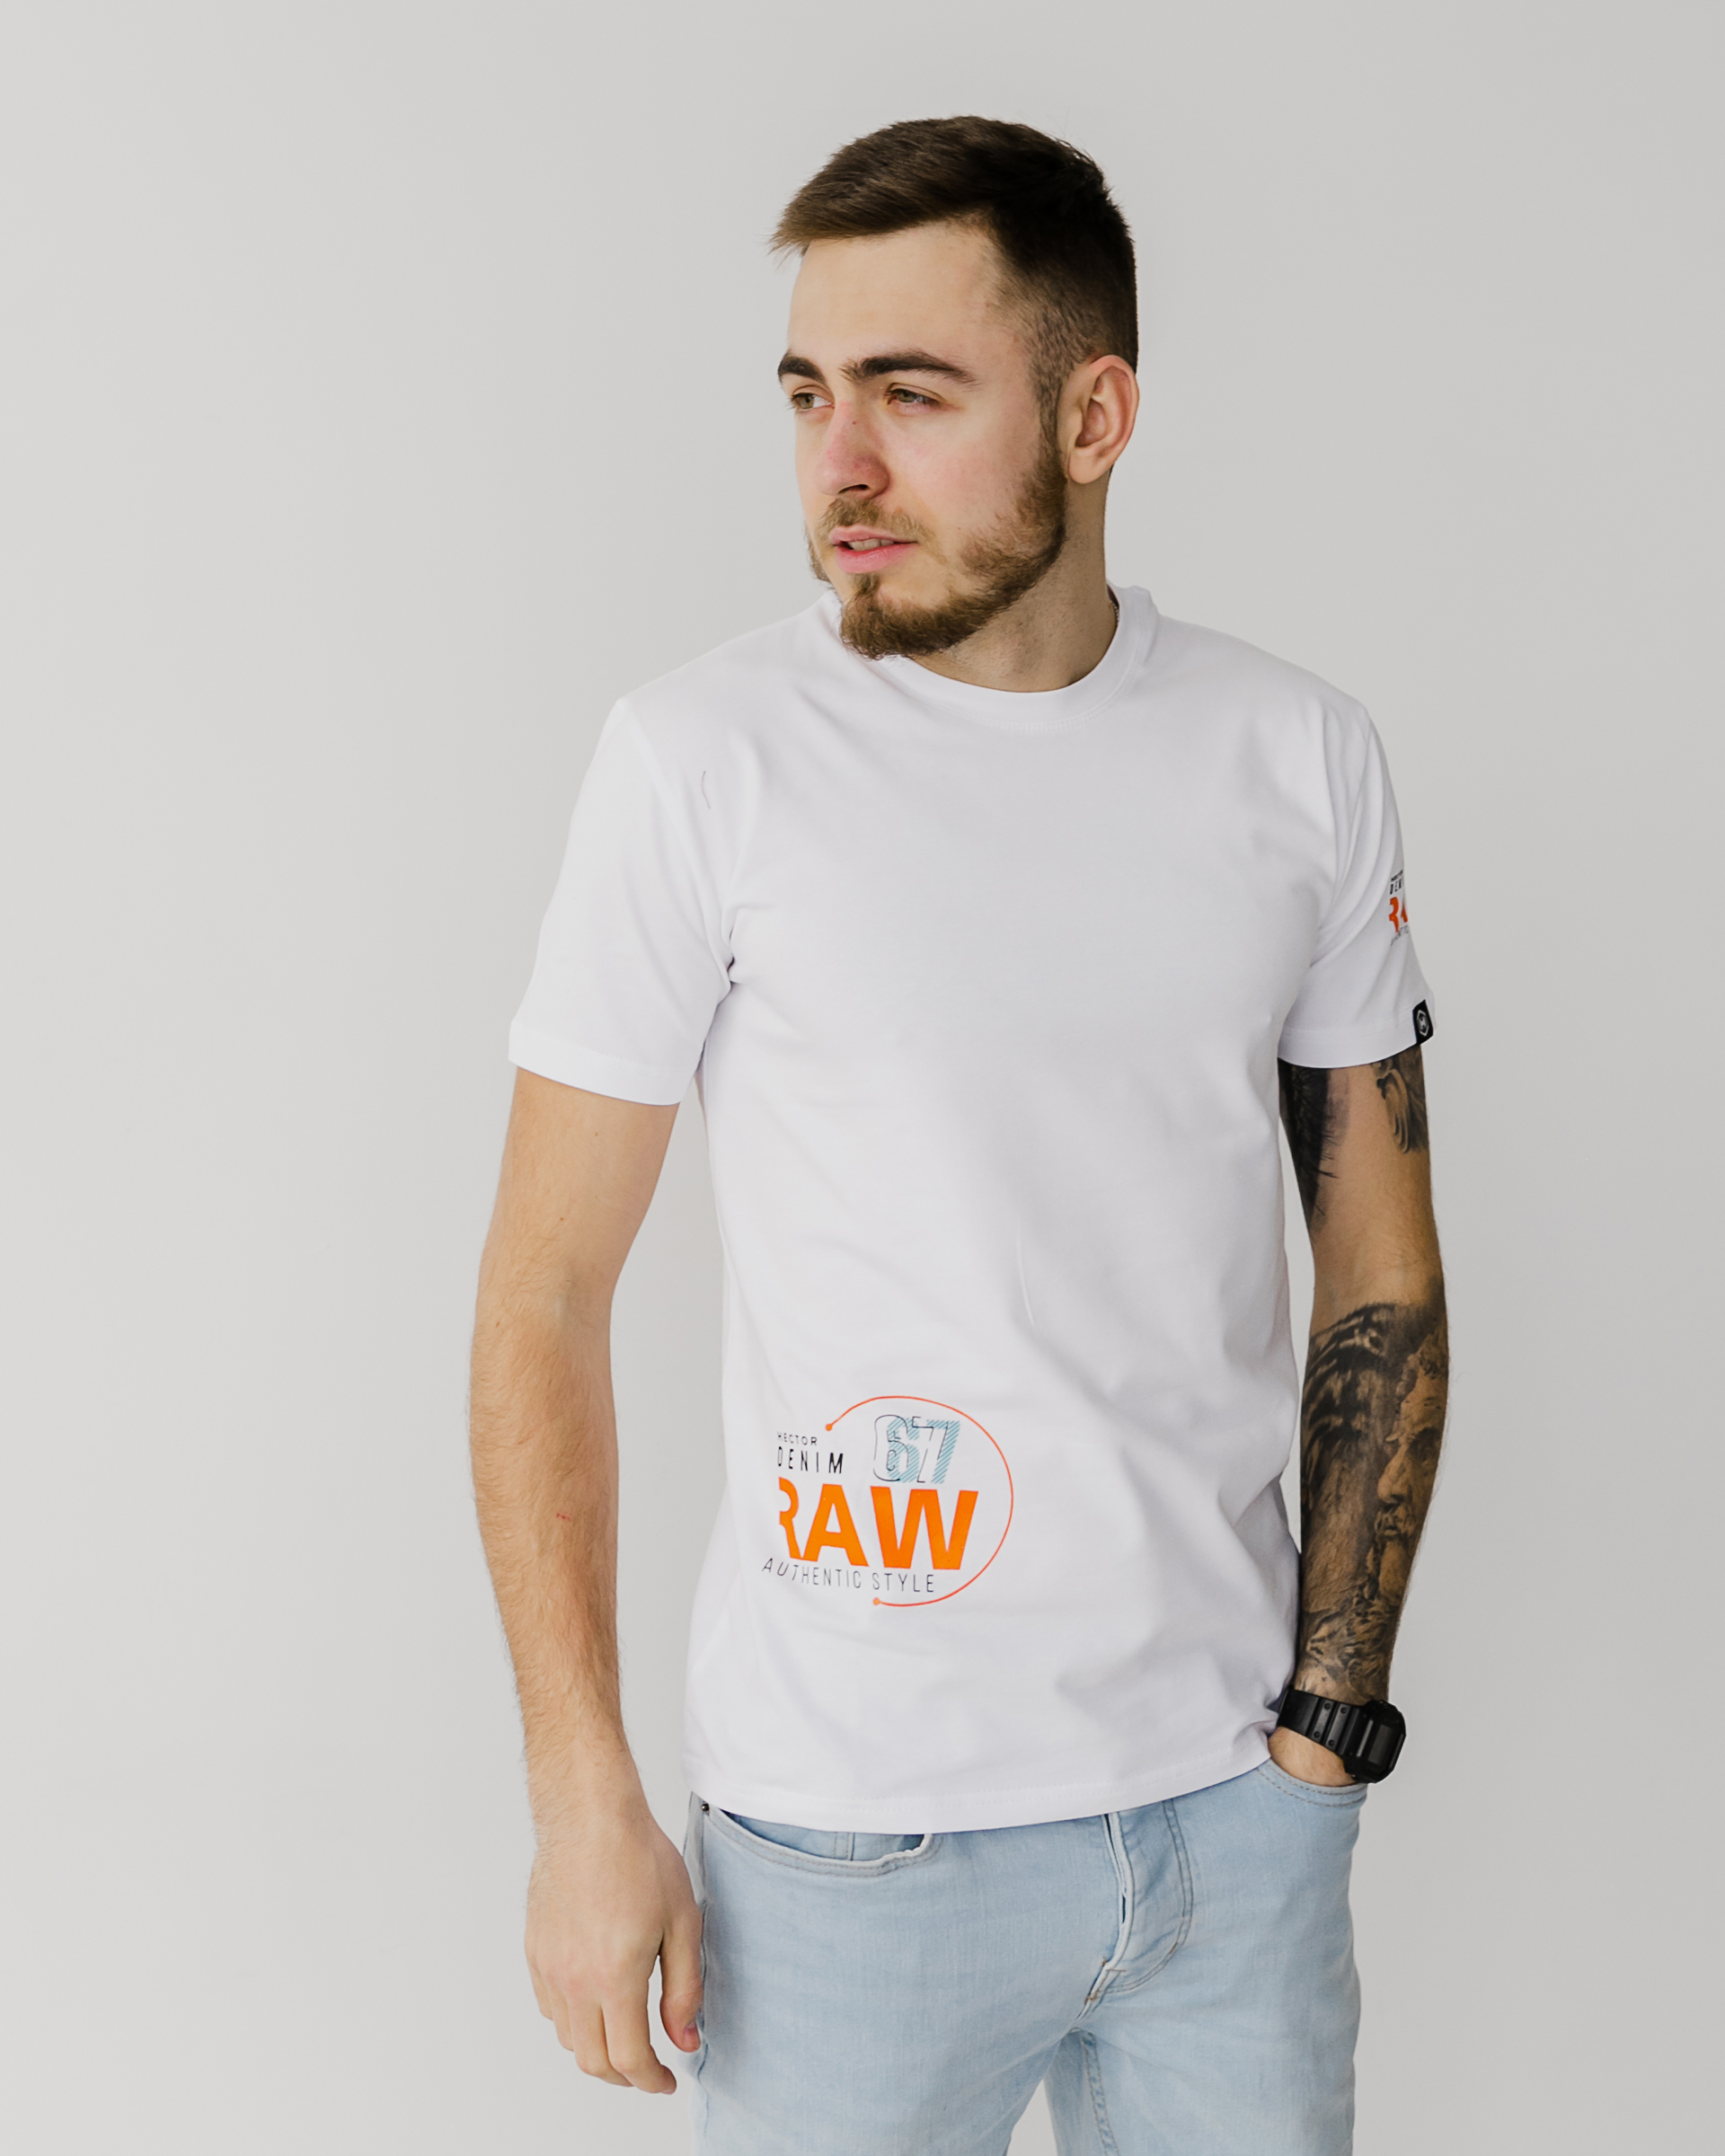 Чоловіча футболка raw 67 40137